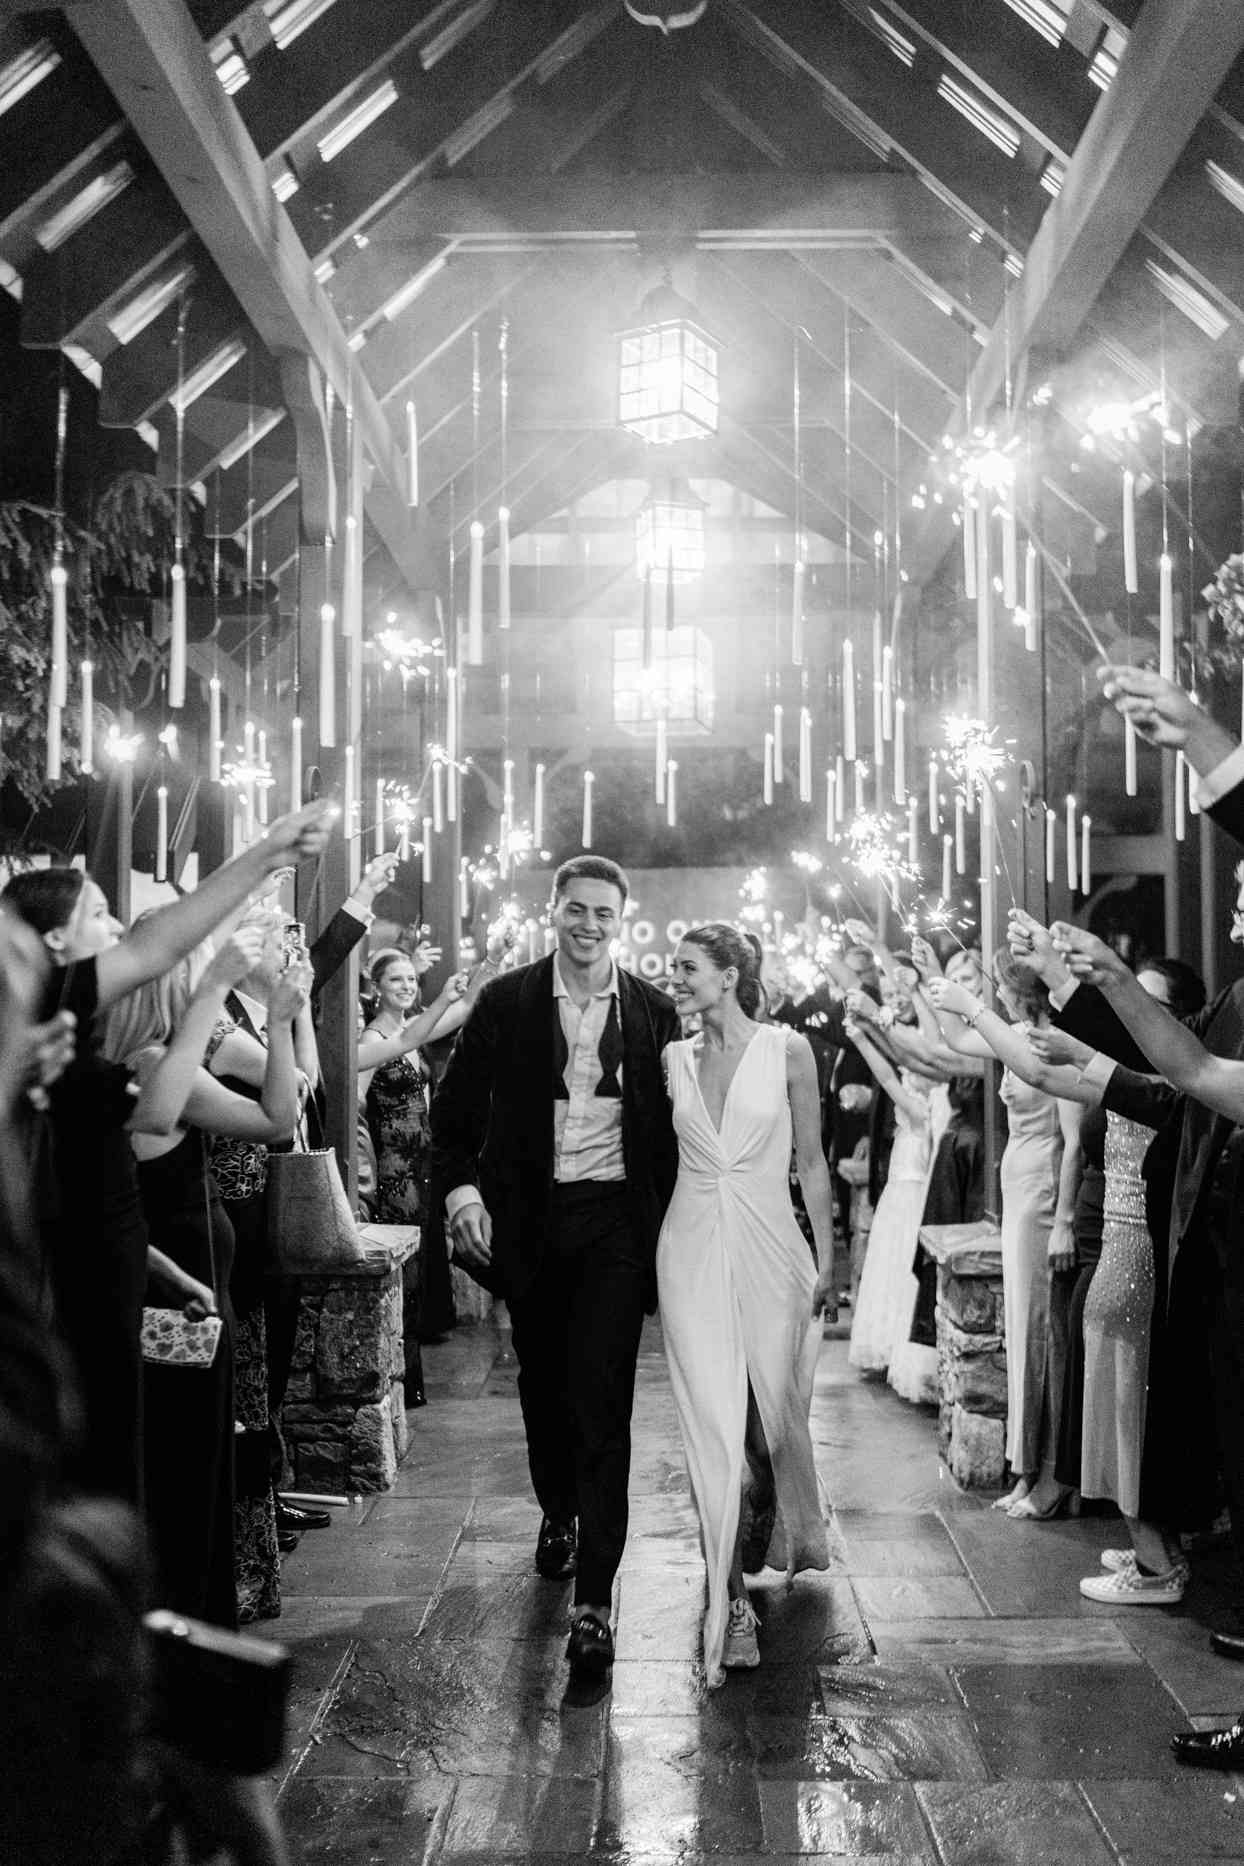 A London-Inspired Wedding in North Carolina | Martha Stewart